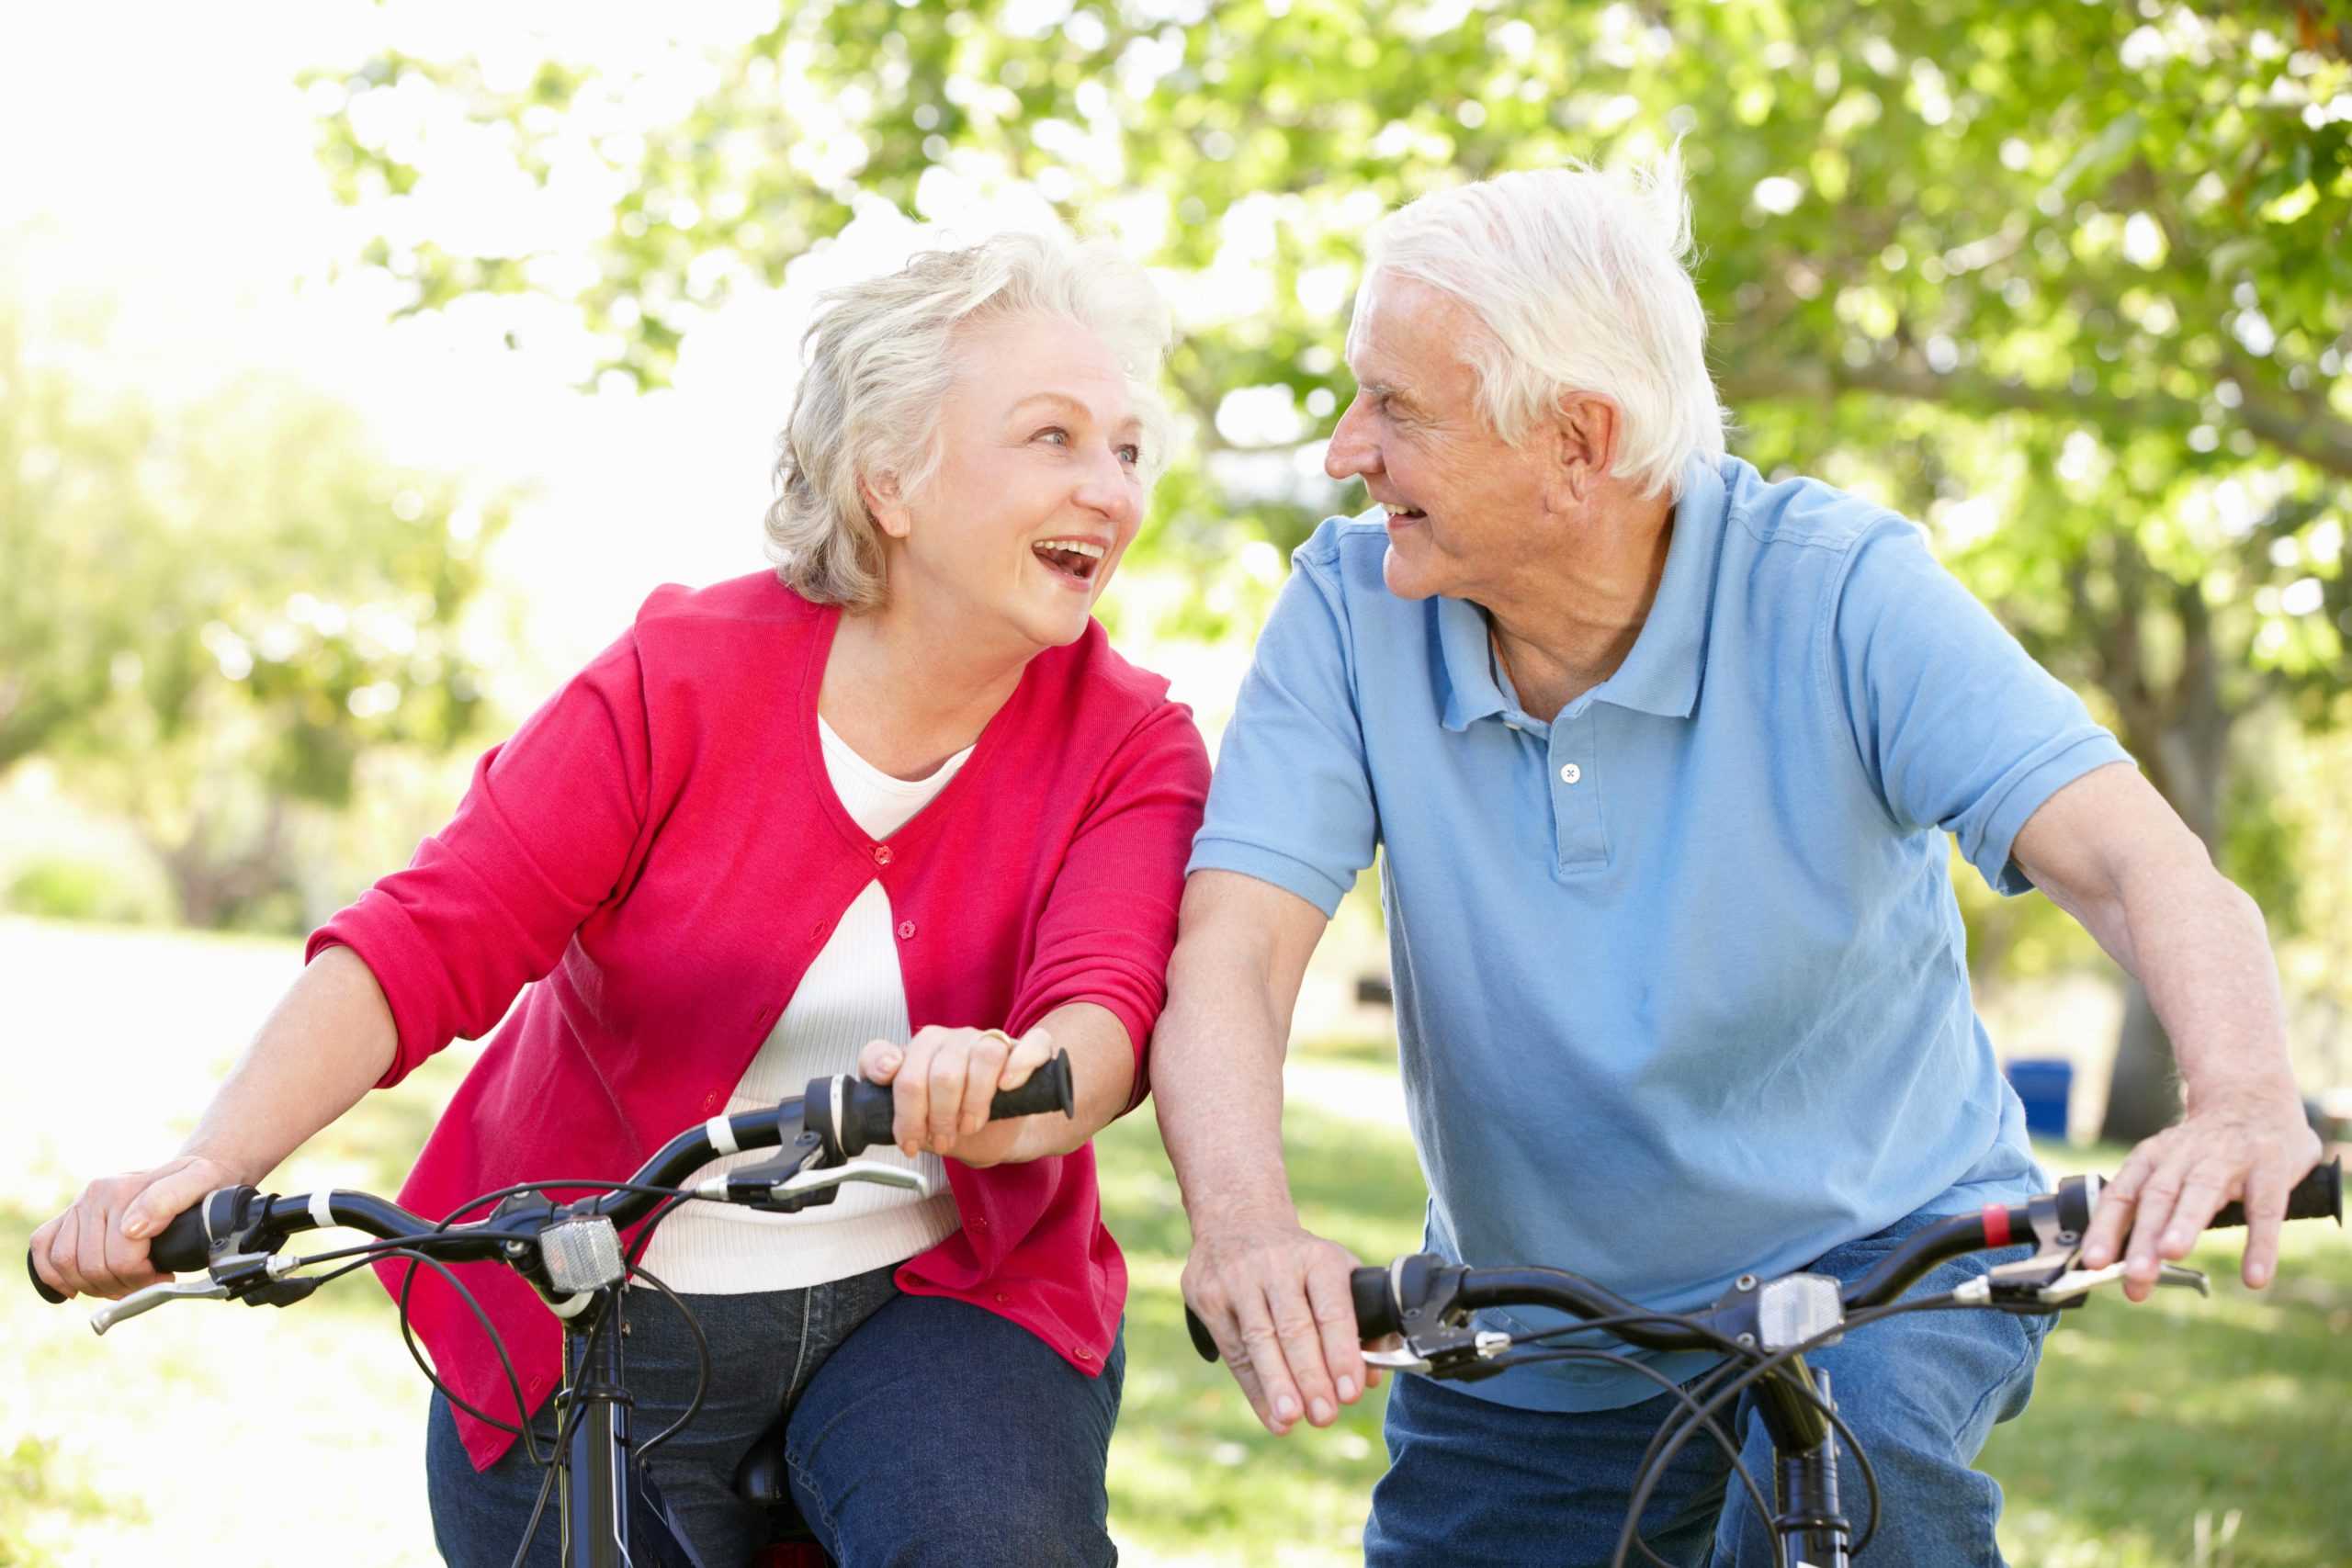 Пожилые люди возраст в россии. Здоровый образ жизни для пожилых людей. Физическая активность пожилых. Пожилые активный образ жизни. Активны йоьращ жизни в старости.